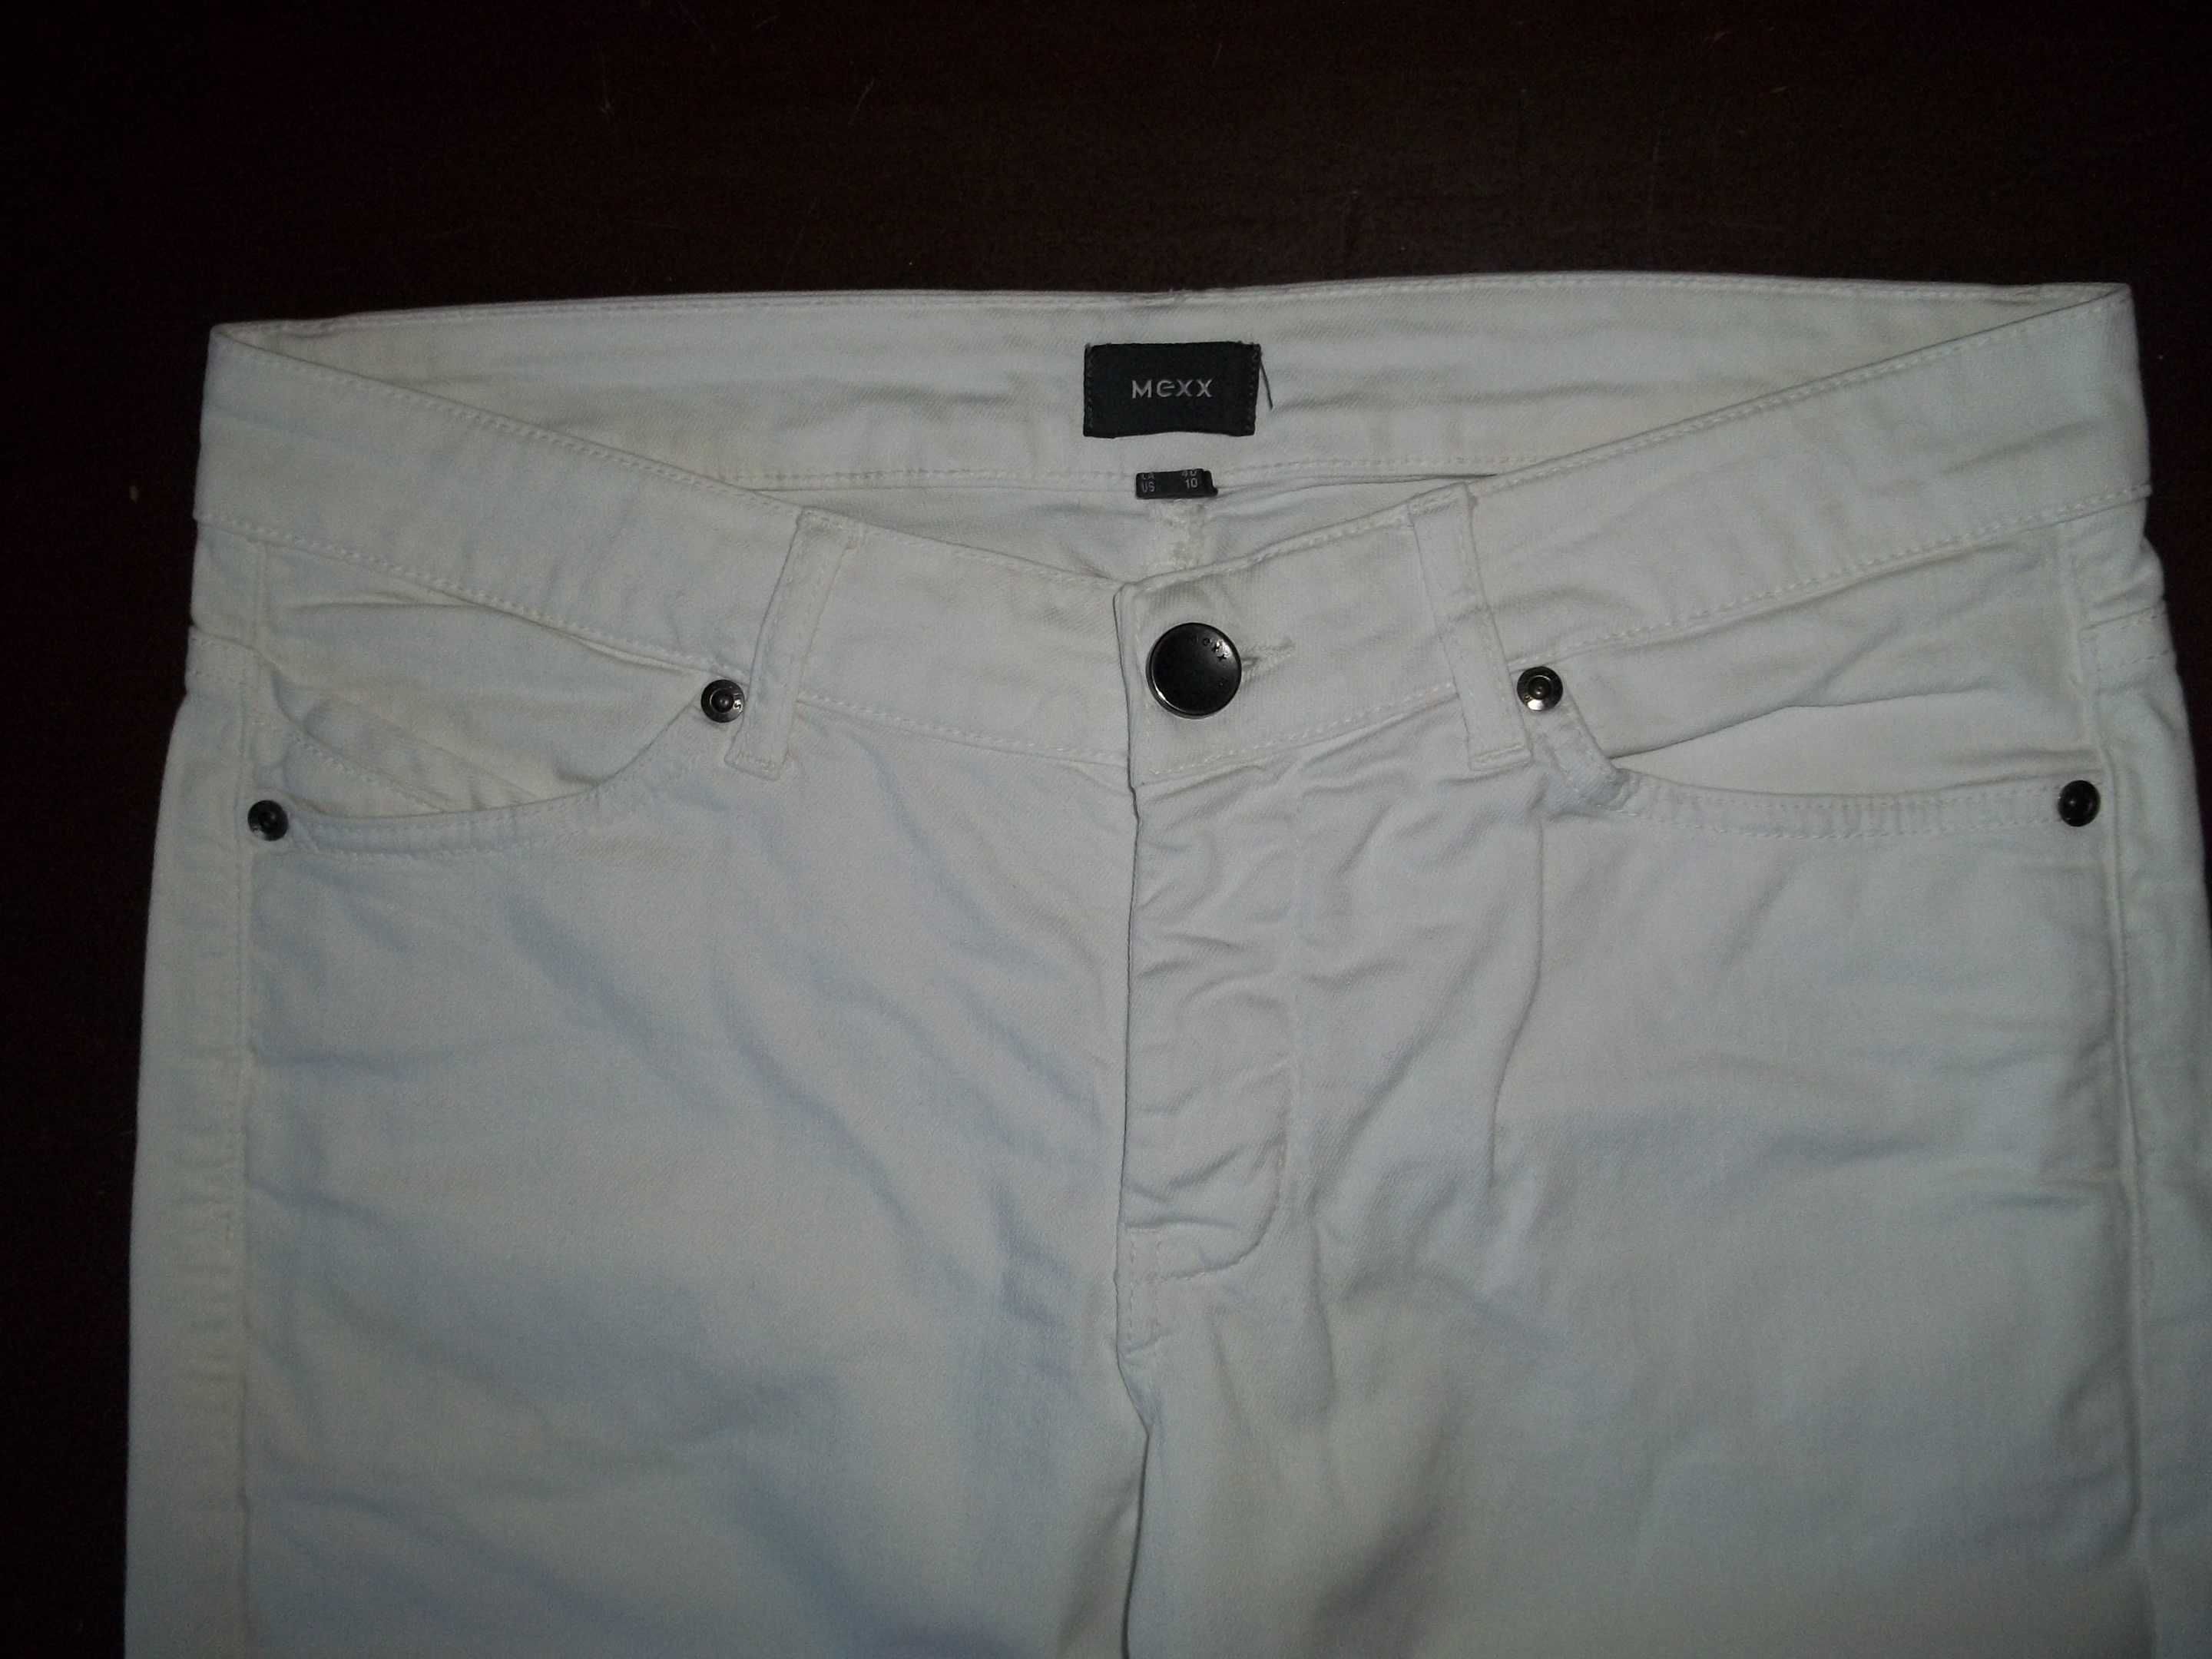 MEXX spodnie białe 100% bawełna rozmiar 40